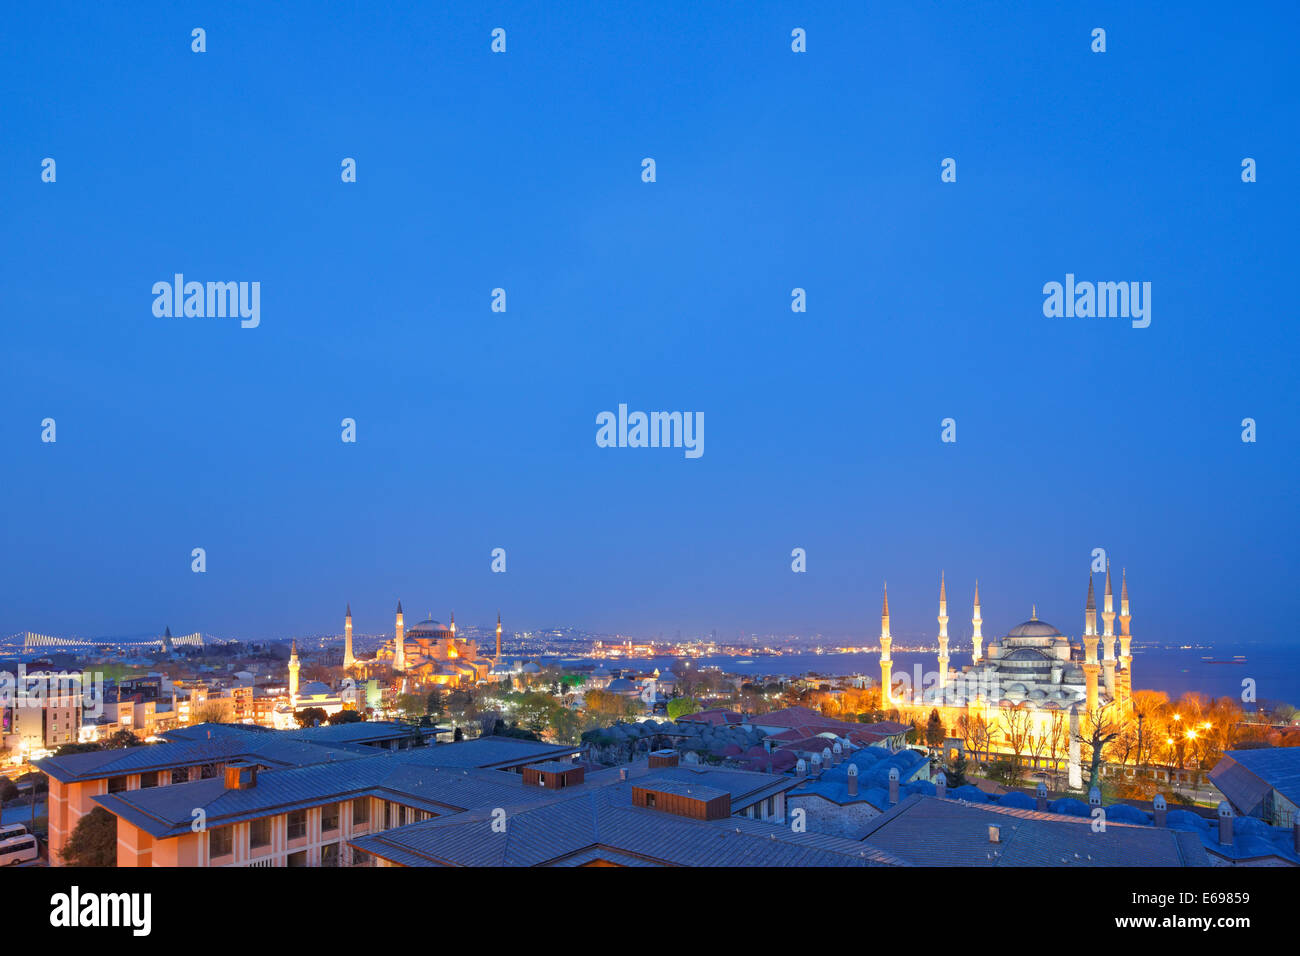 Panorama della città con la Basilica di Santa Sofia e la Moschea Blu, Sultan Ahmed Moschea Sultanahmet, Istanbul, parte europea, Turchia Foto Stock